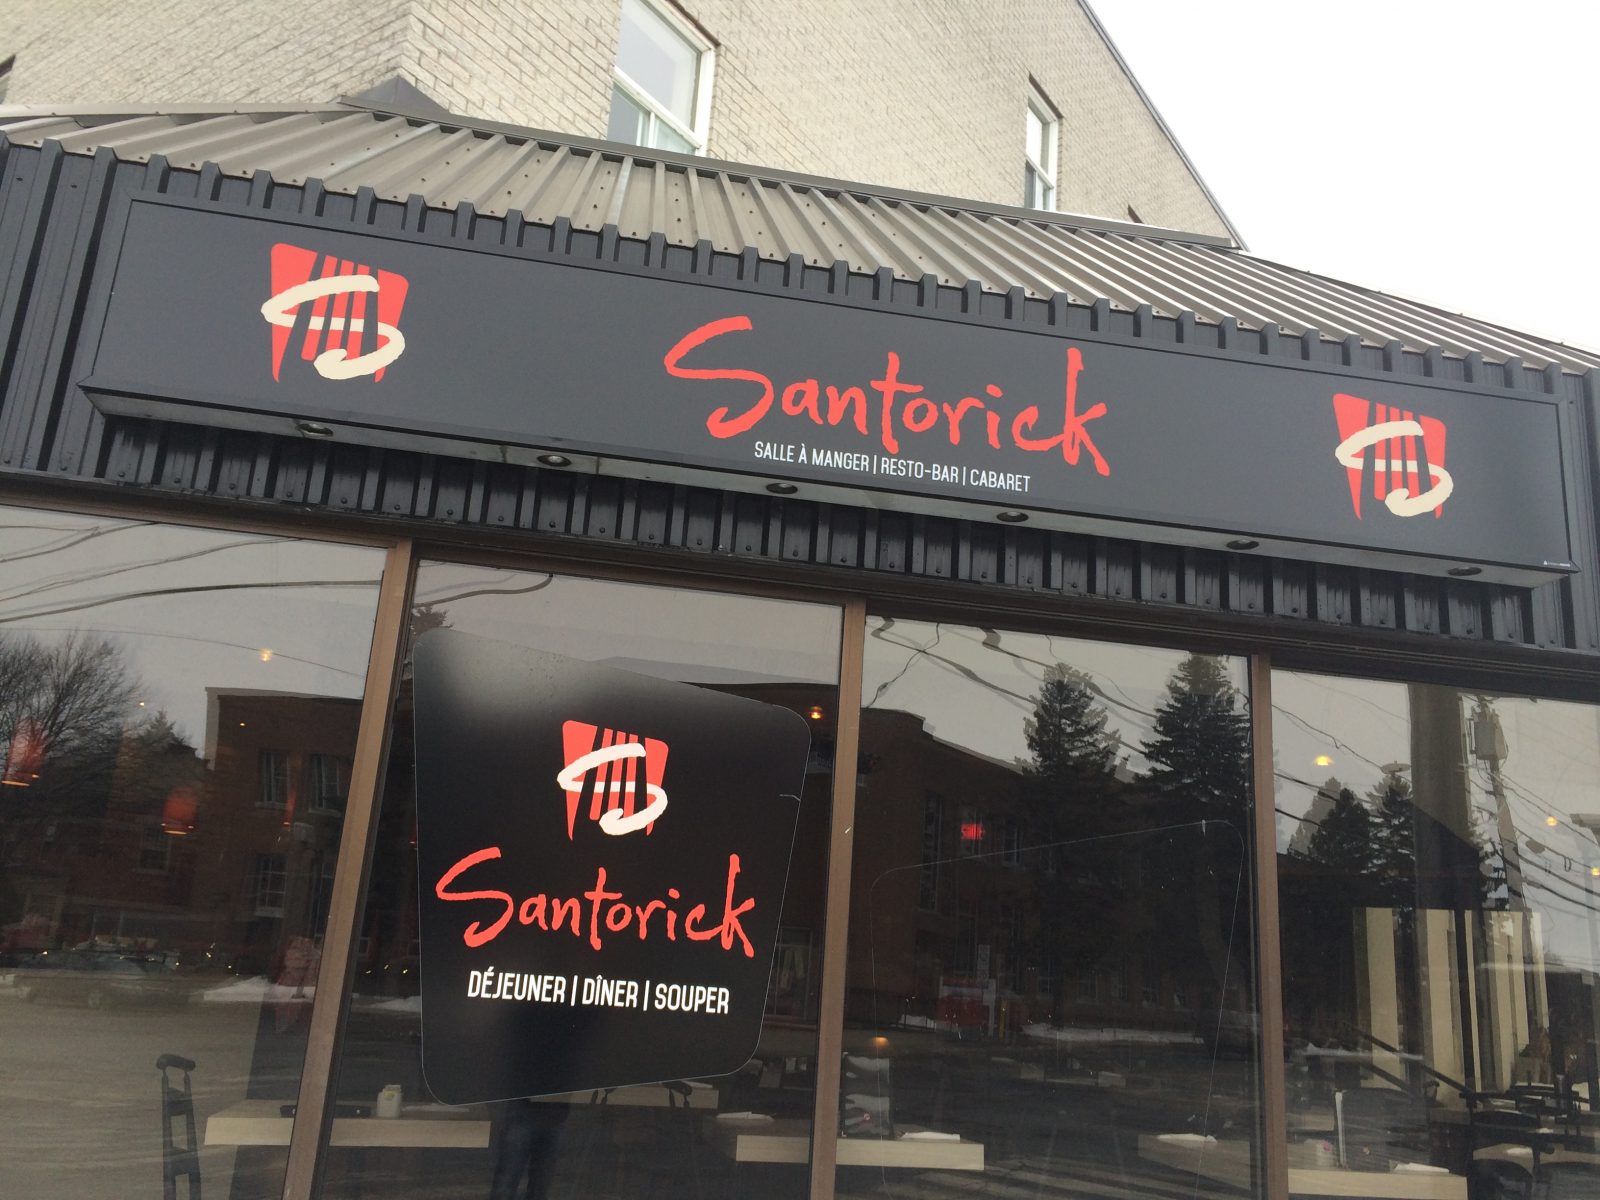 Le Santorick ferme ses portes